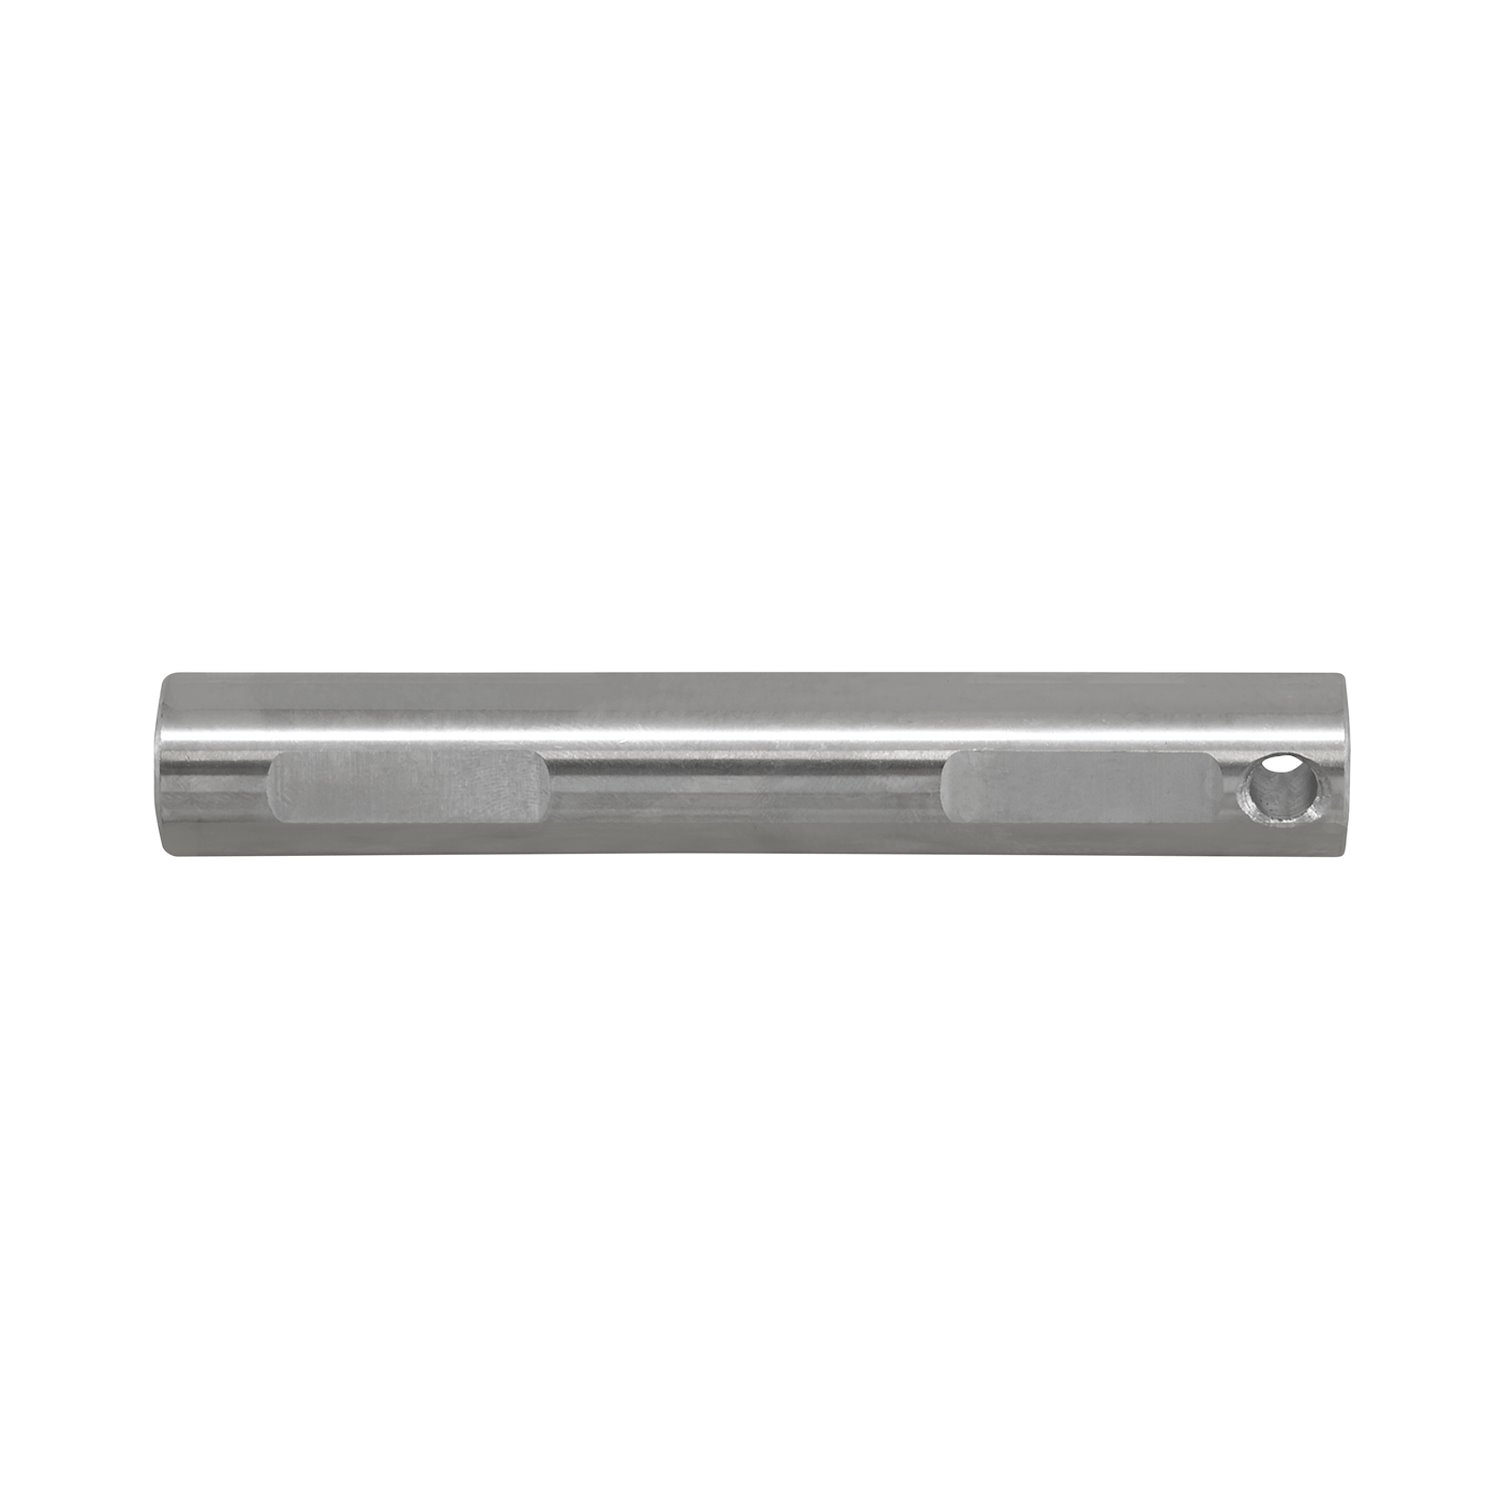 Replacement Cross Pin Shaft For Dana 44, Standard Open